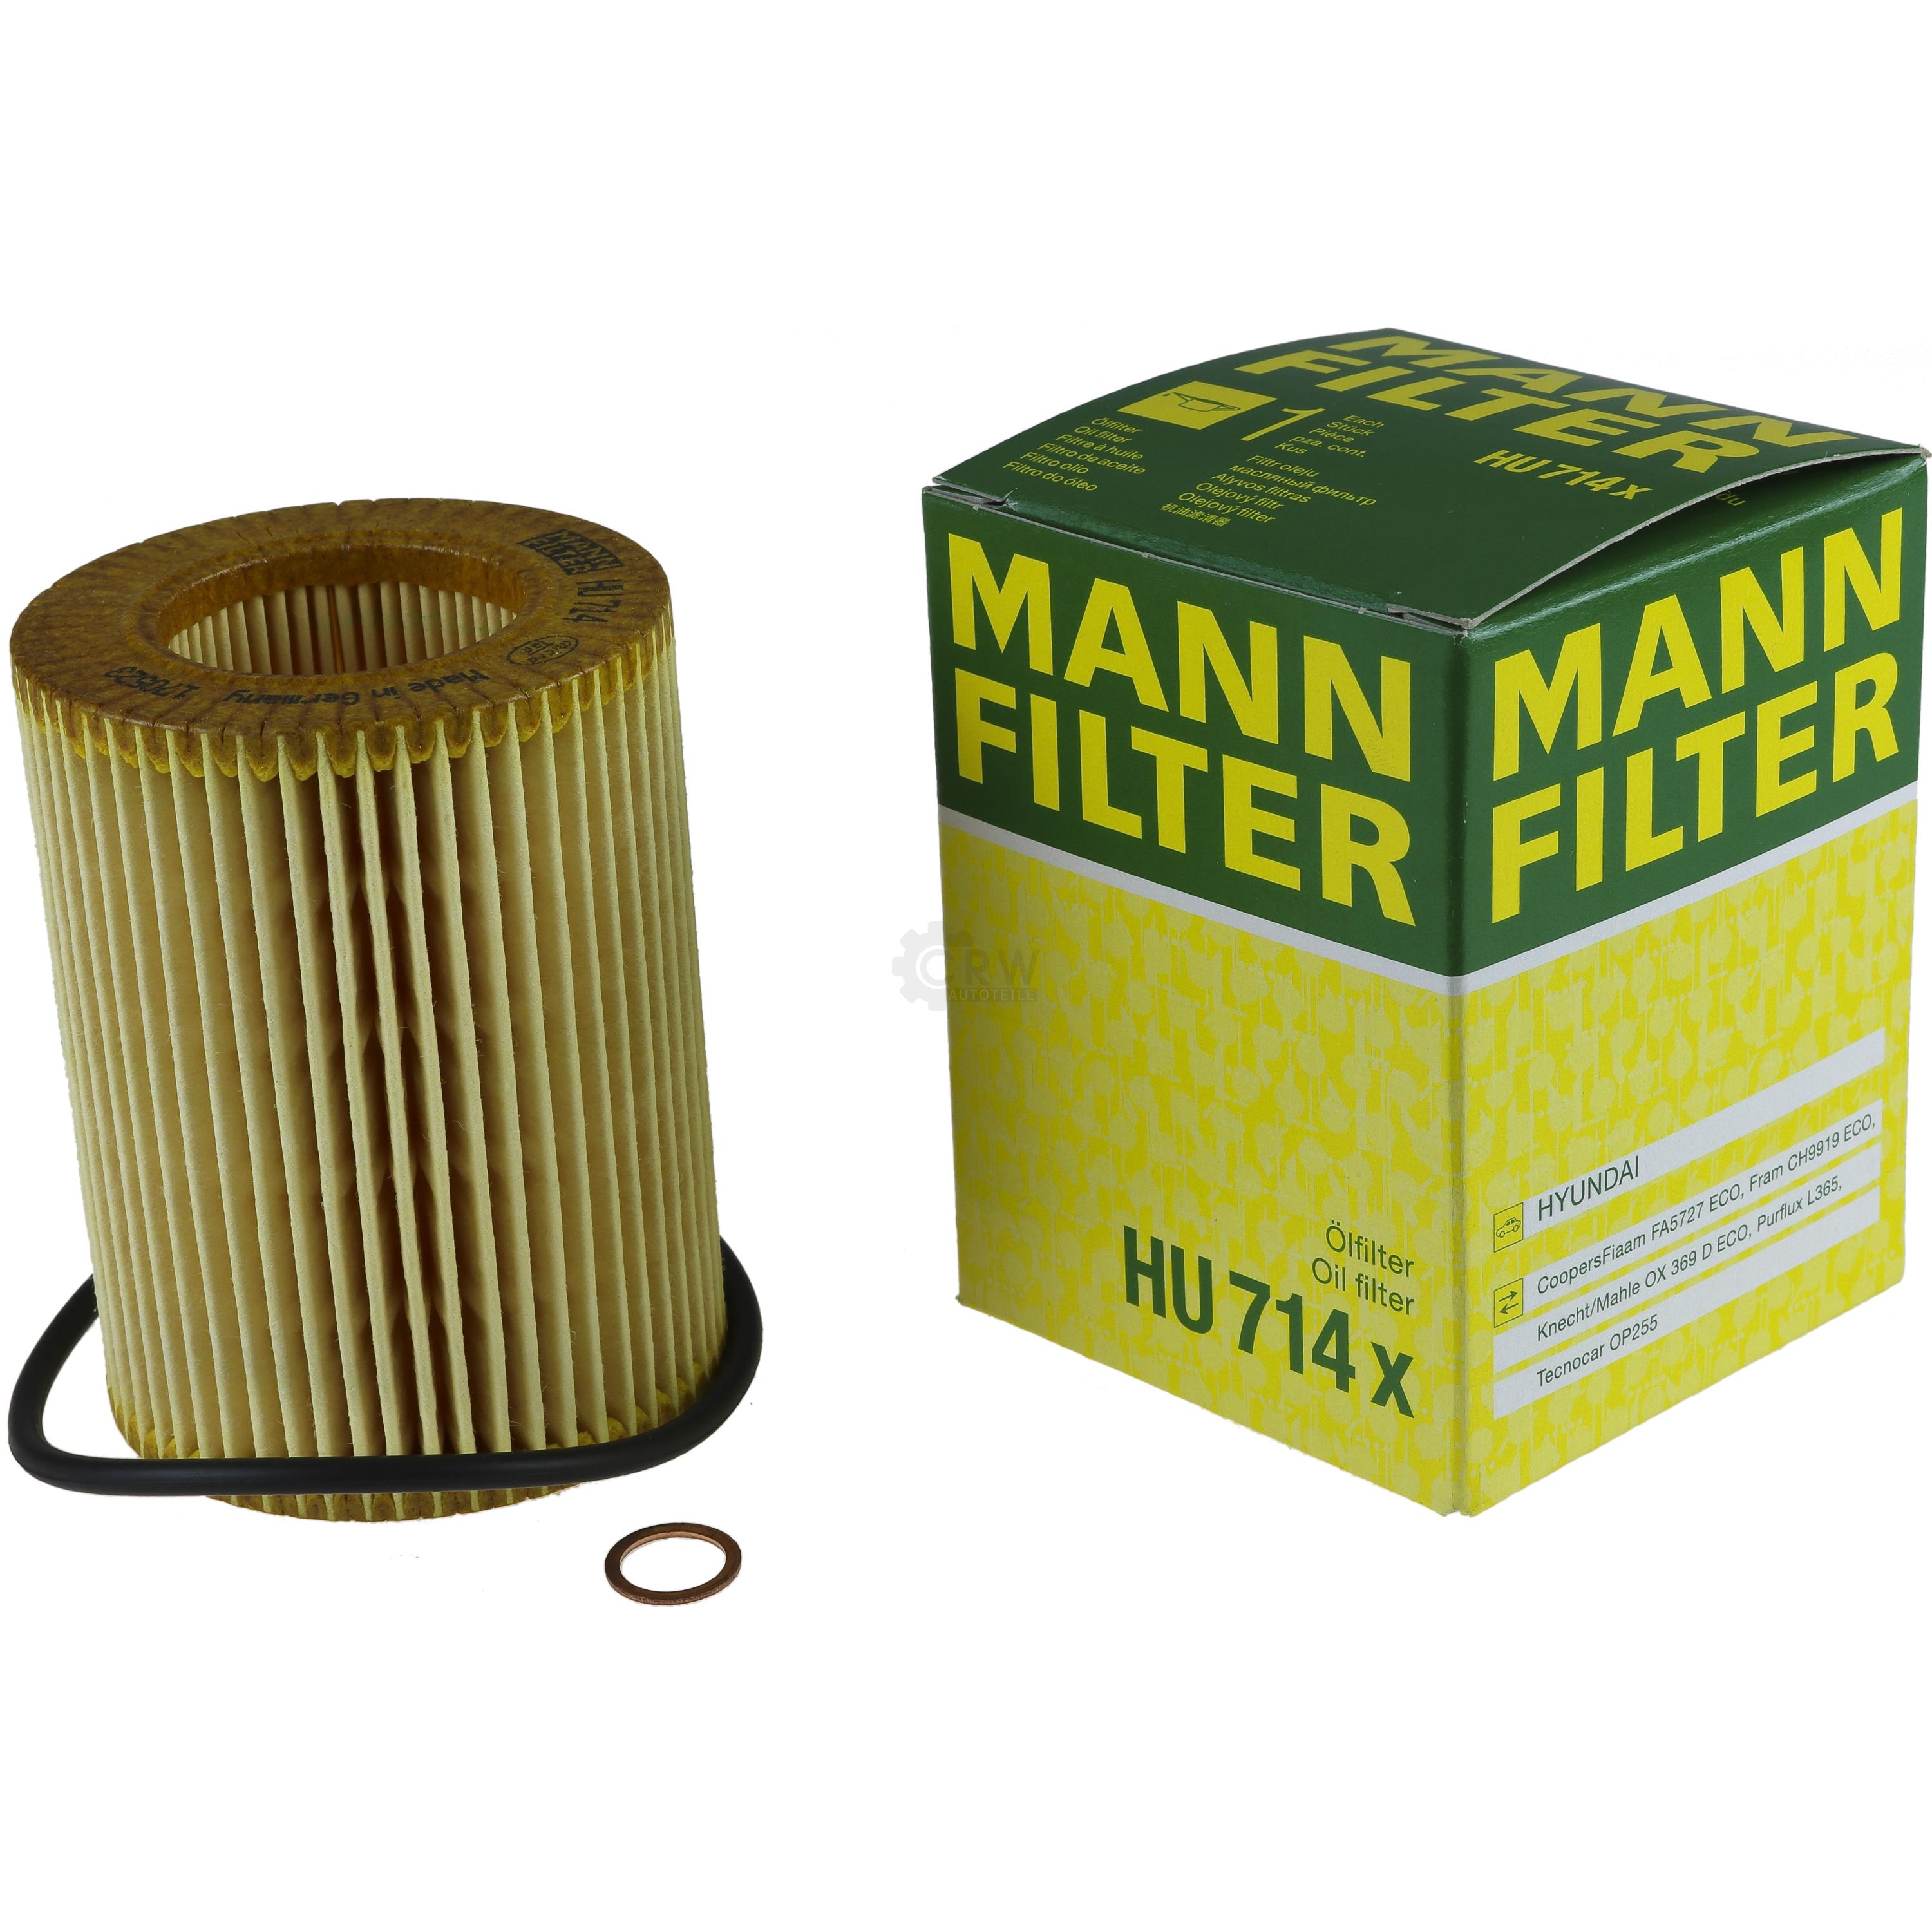 MANN-FILTER Ölfilter HU 714 x Oil Filter